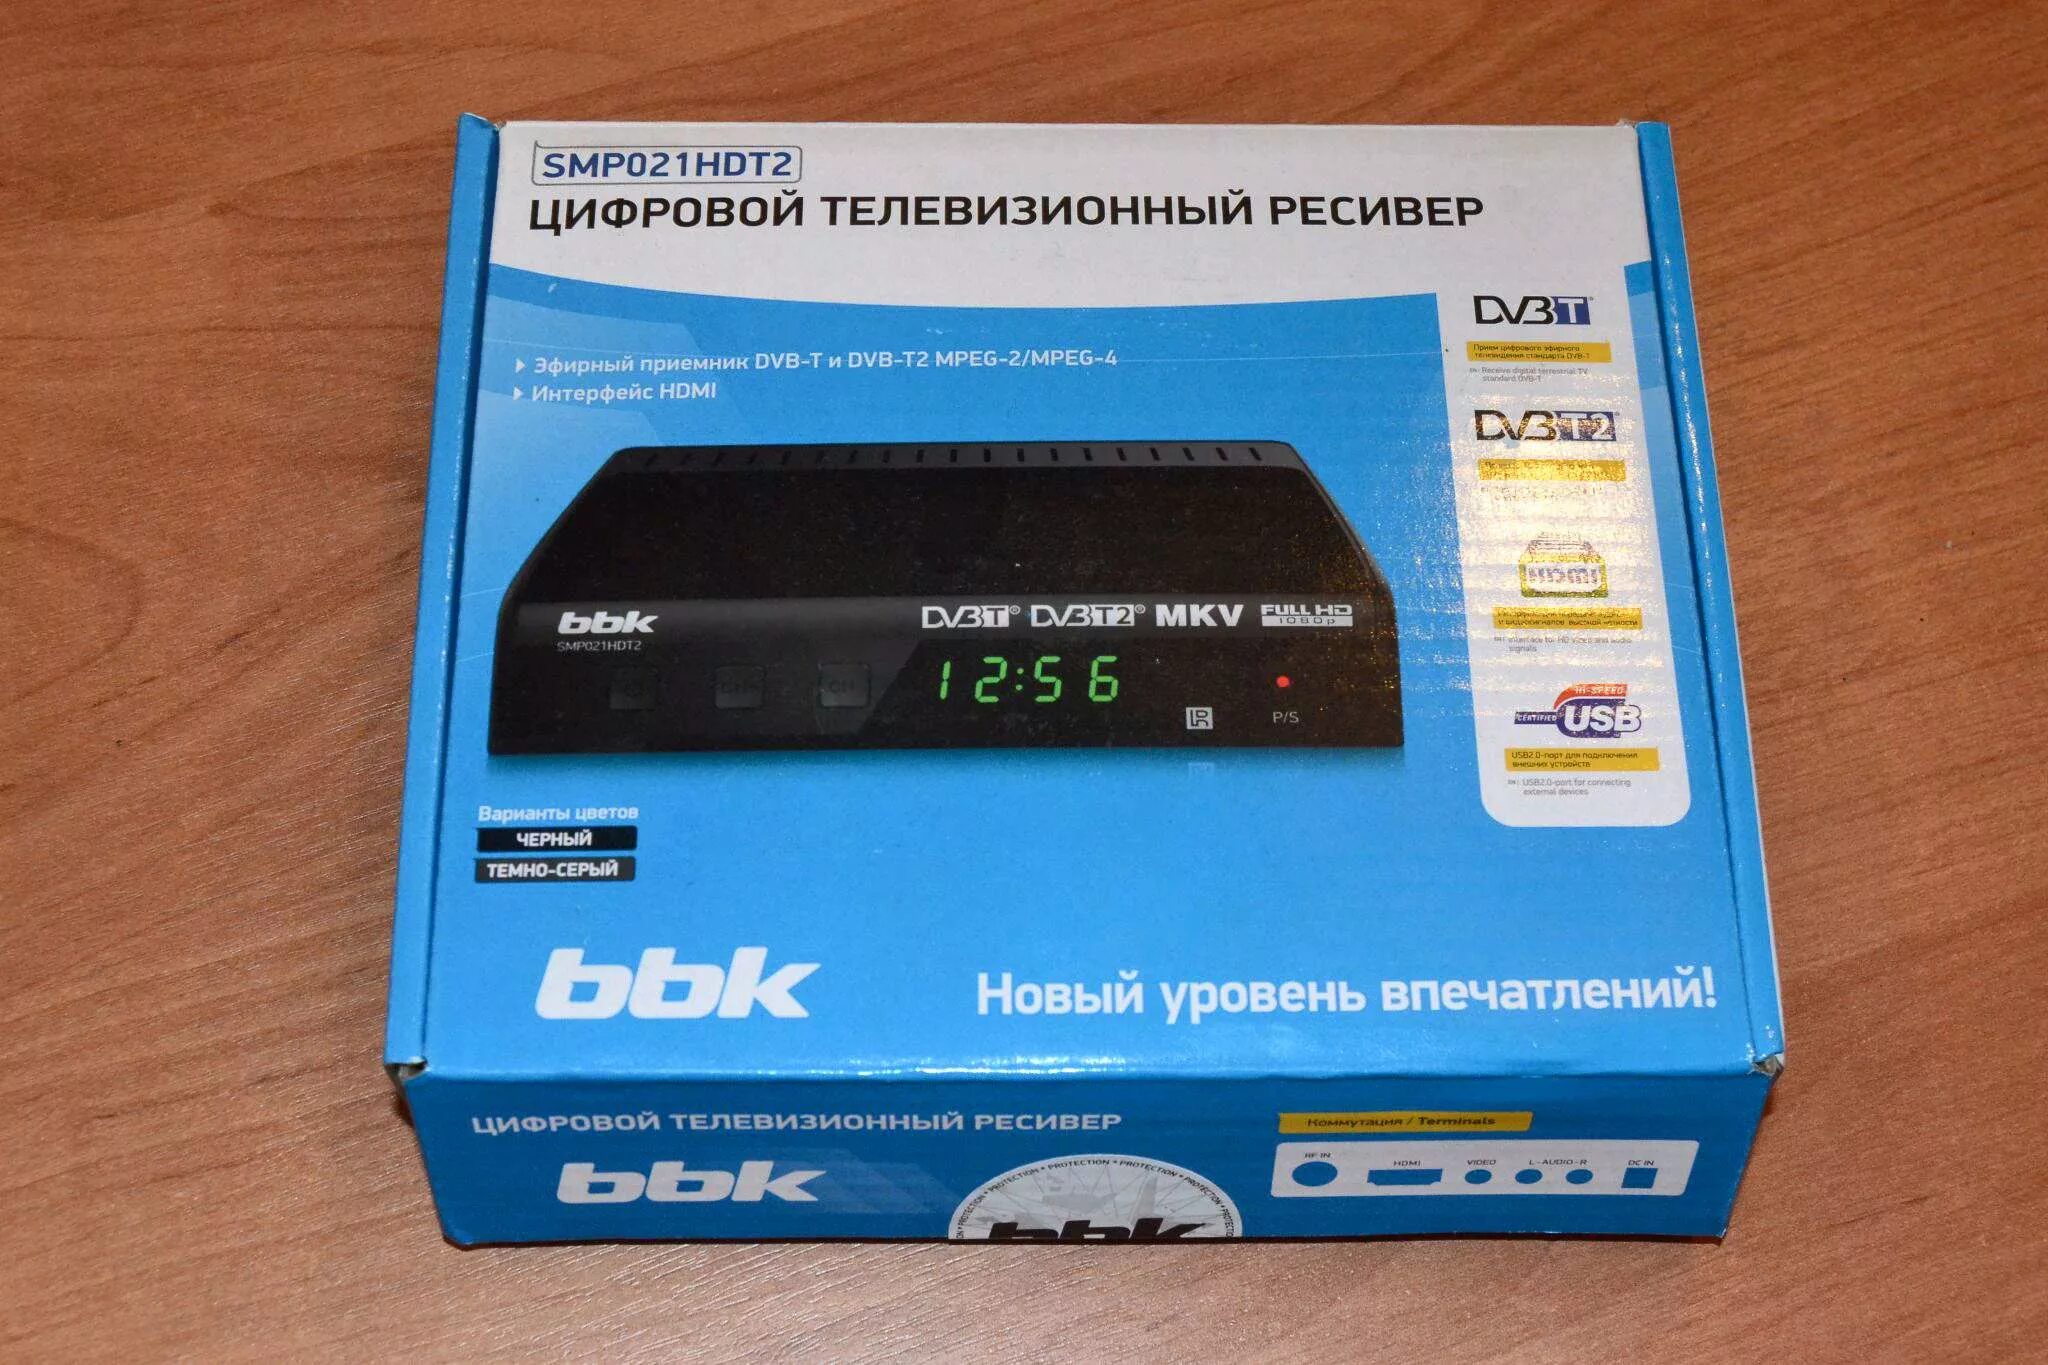 ТВ приставка BBK smp021hdt2. Ресивер DVB-t2 BBK smp021hdt2. BBK ресивер DVB-t2. ТВ приставки BBK smp022hdt2.